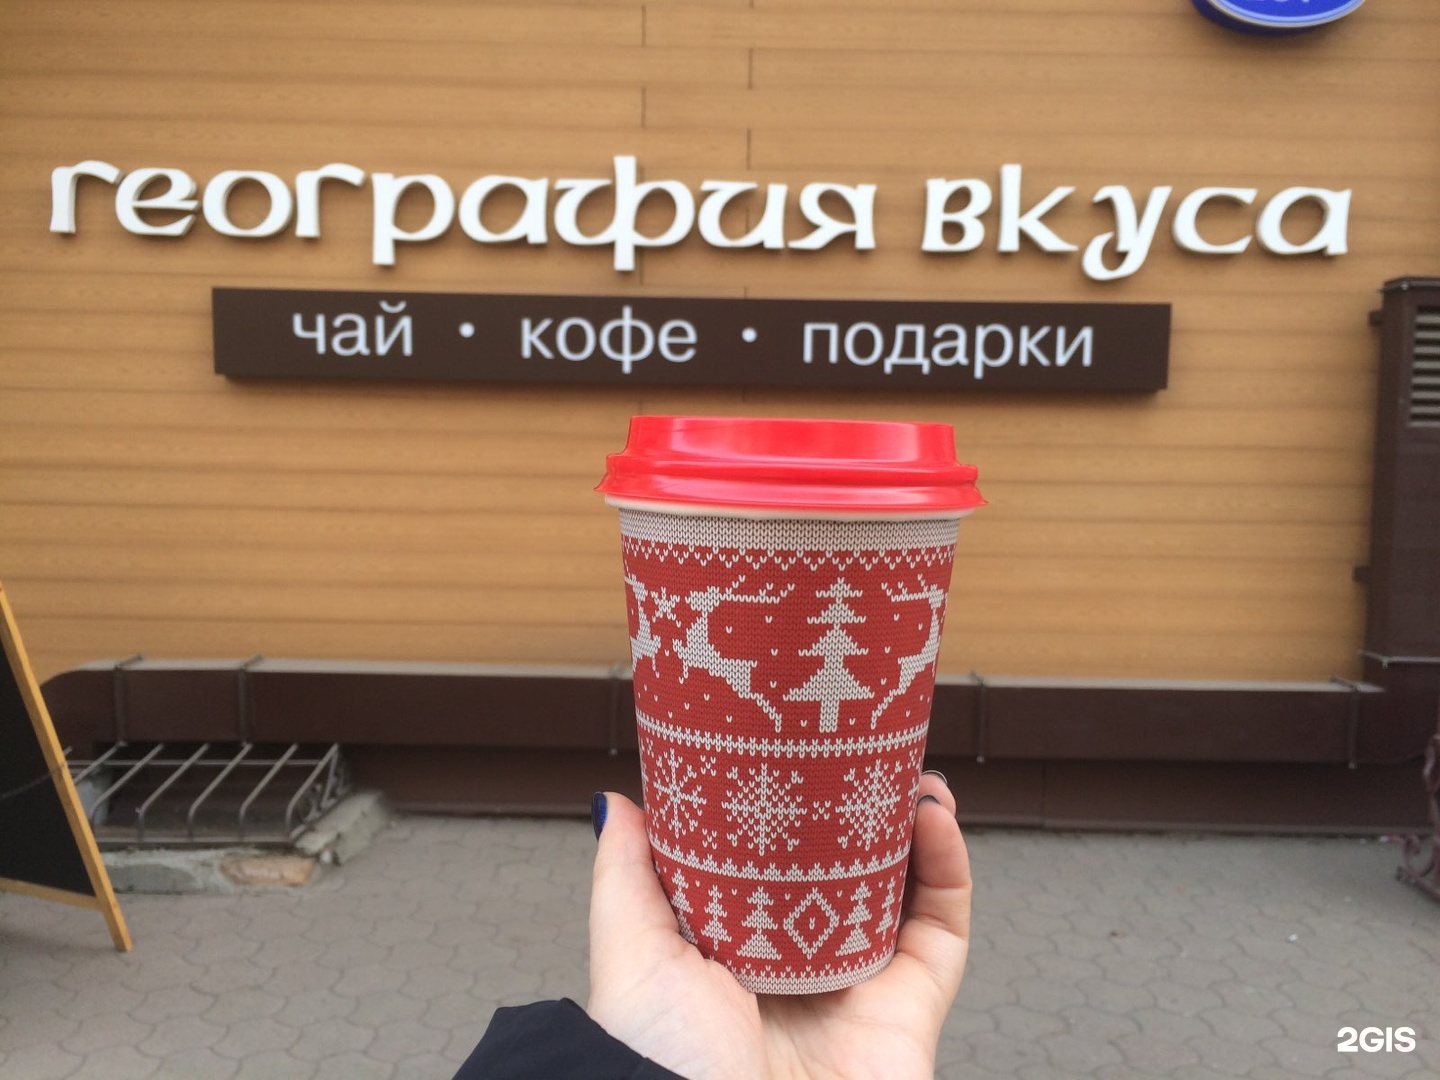 Купить кофе в красноярске